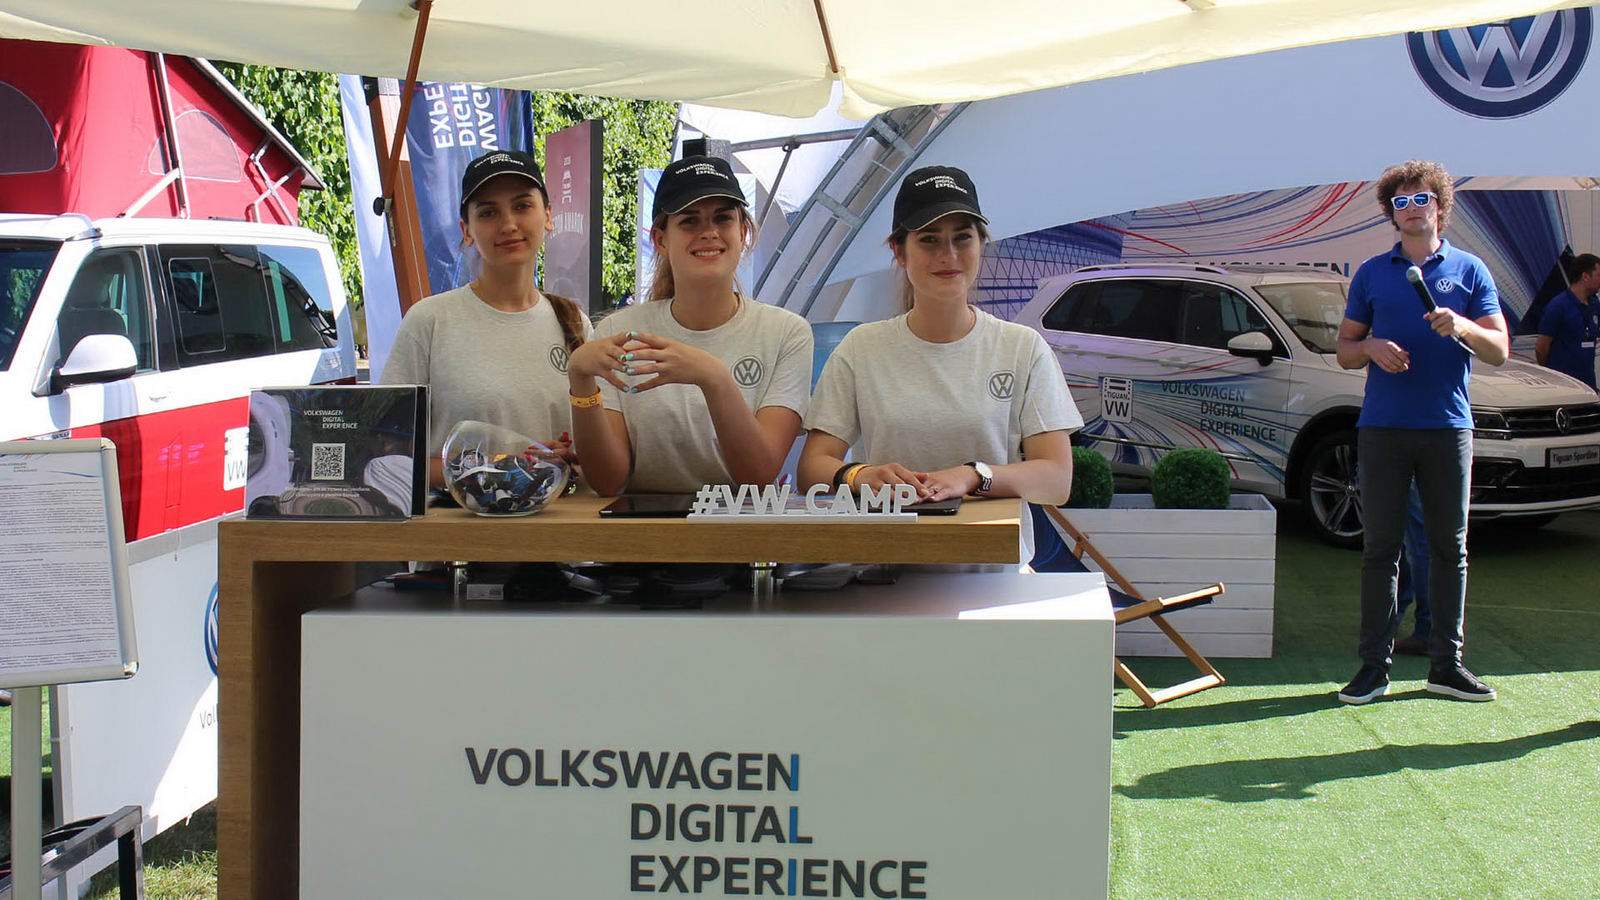 VW Camp